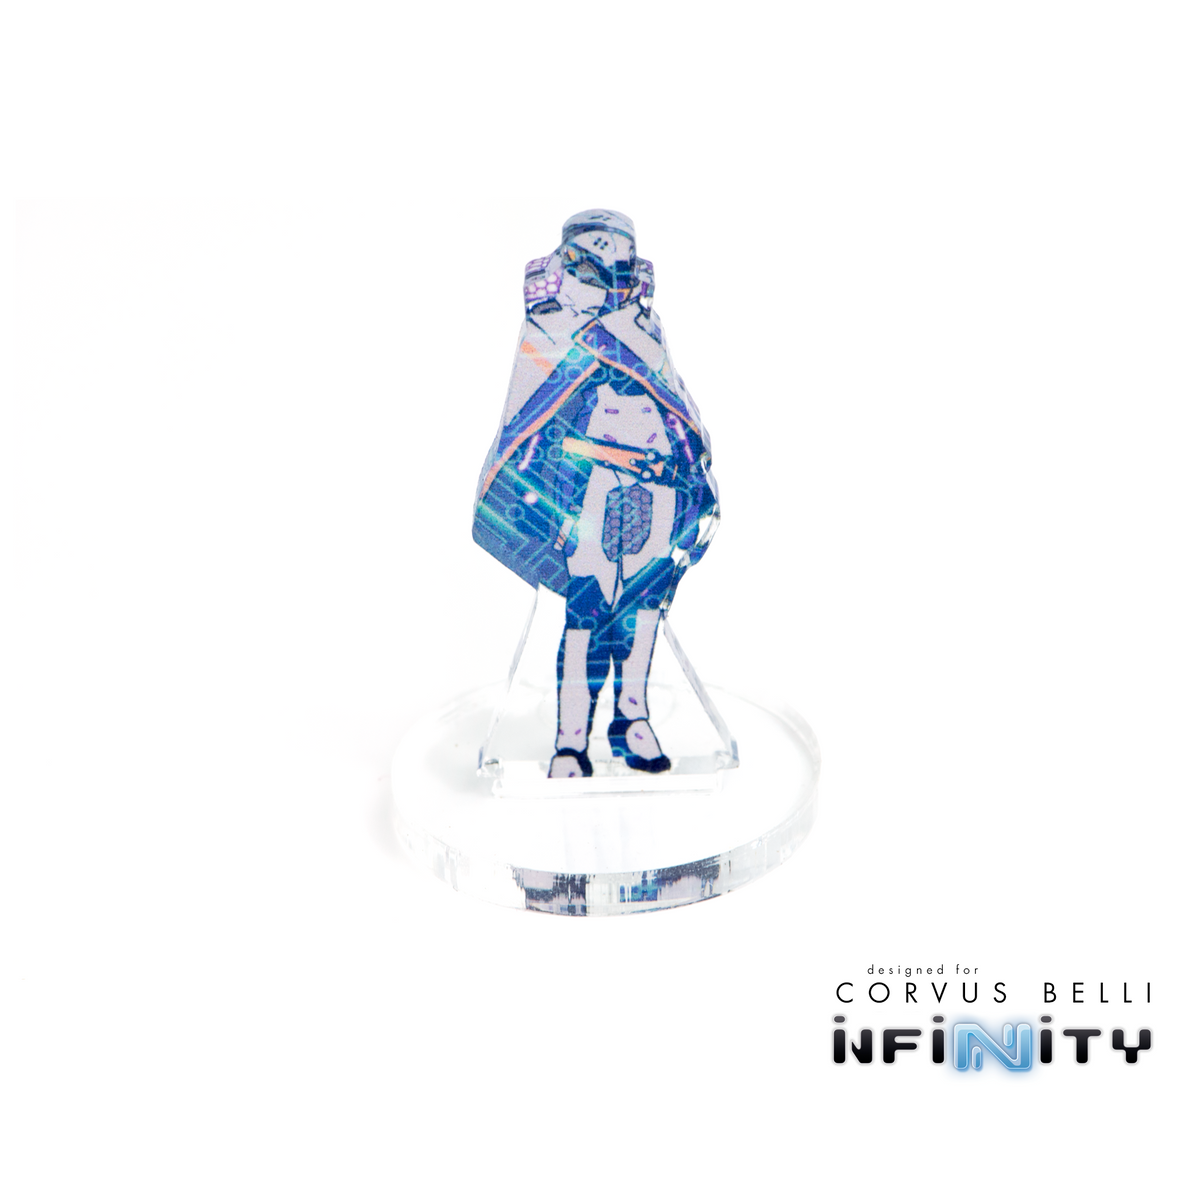 Marcadores 3D Infinity: Apsara Cyberdancer (Cibermáscara de 25 mm)